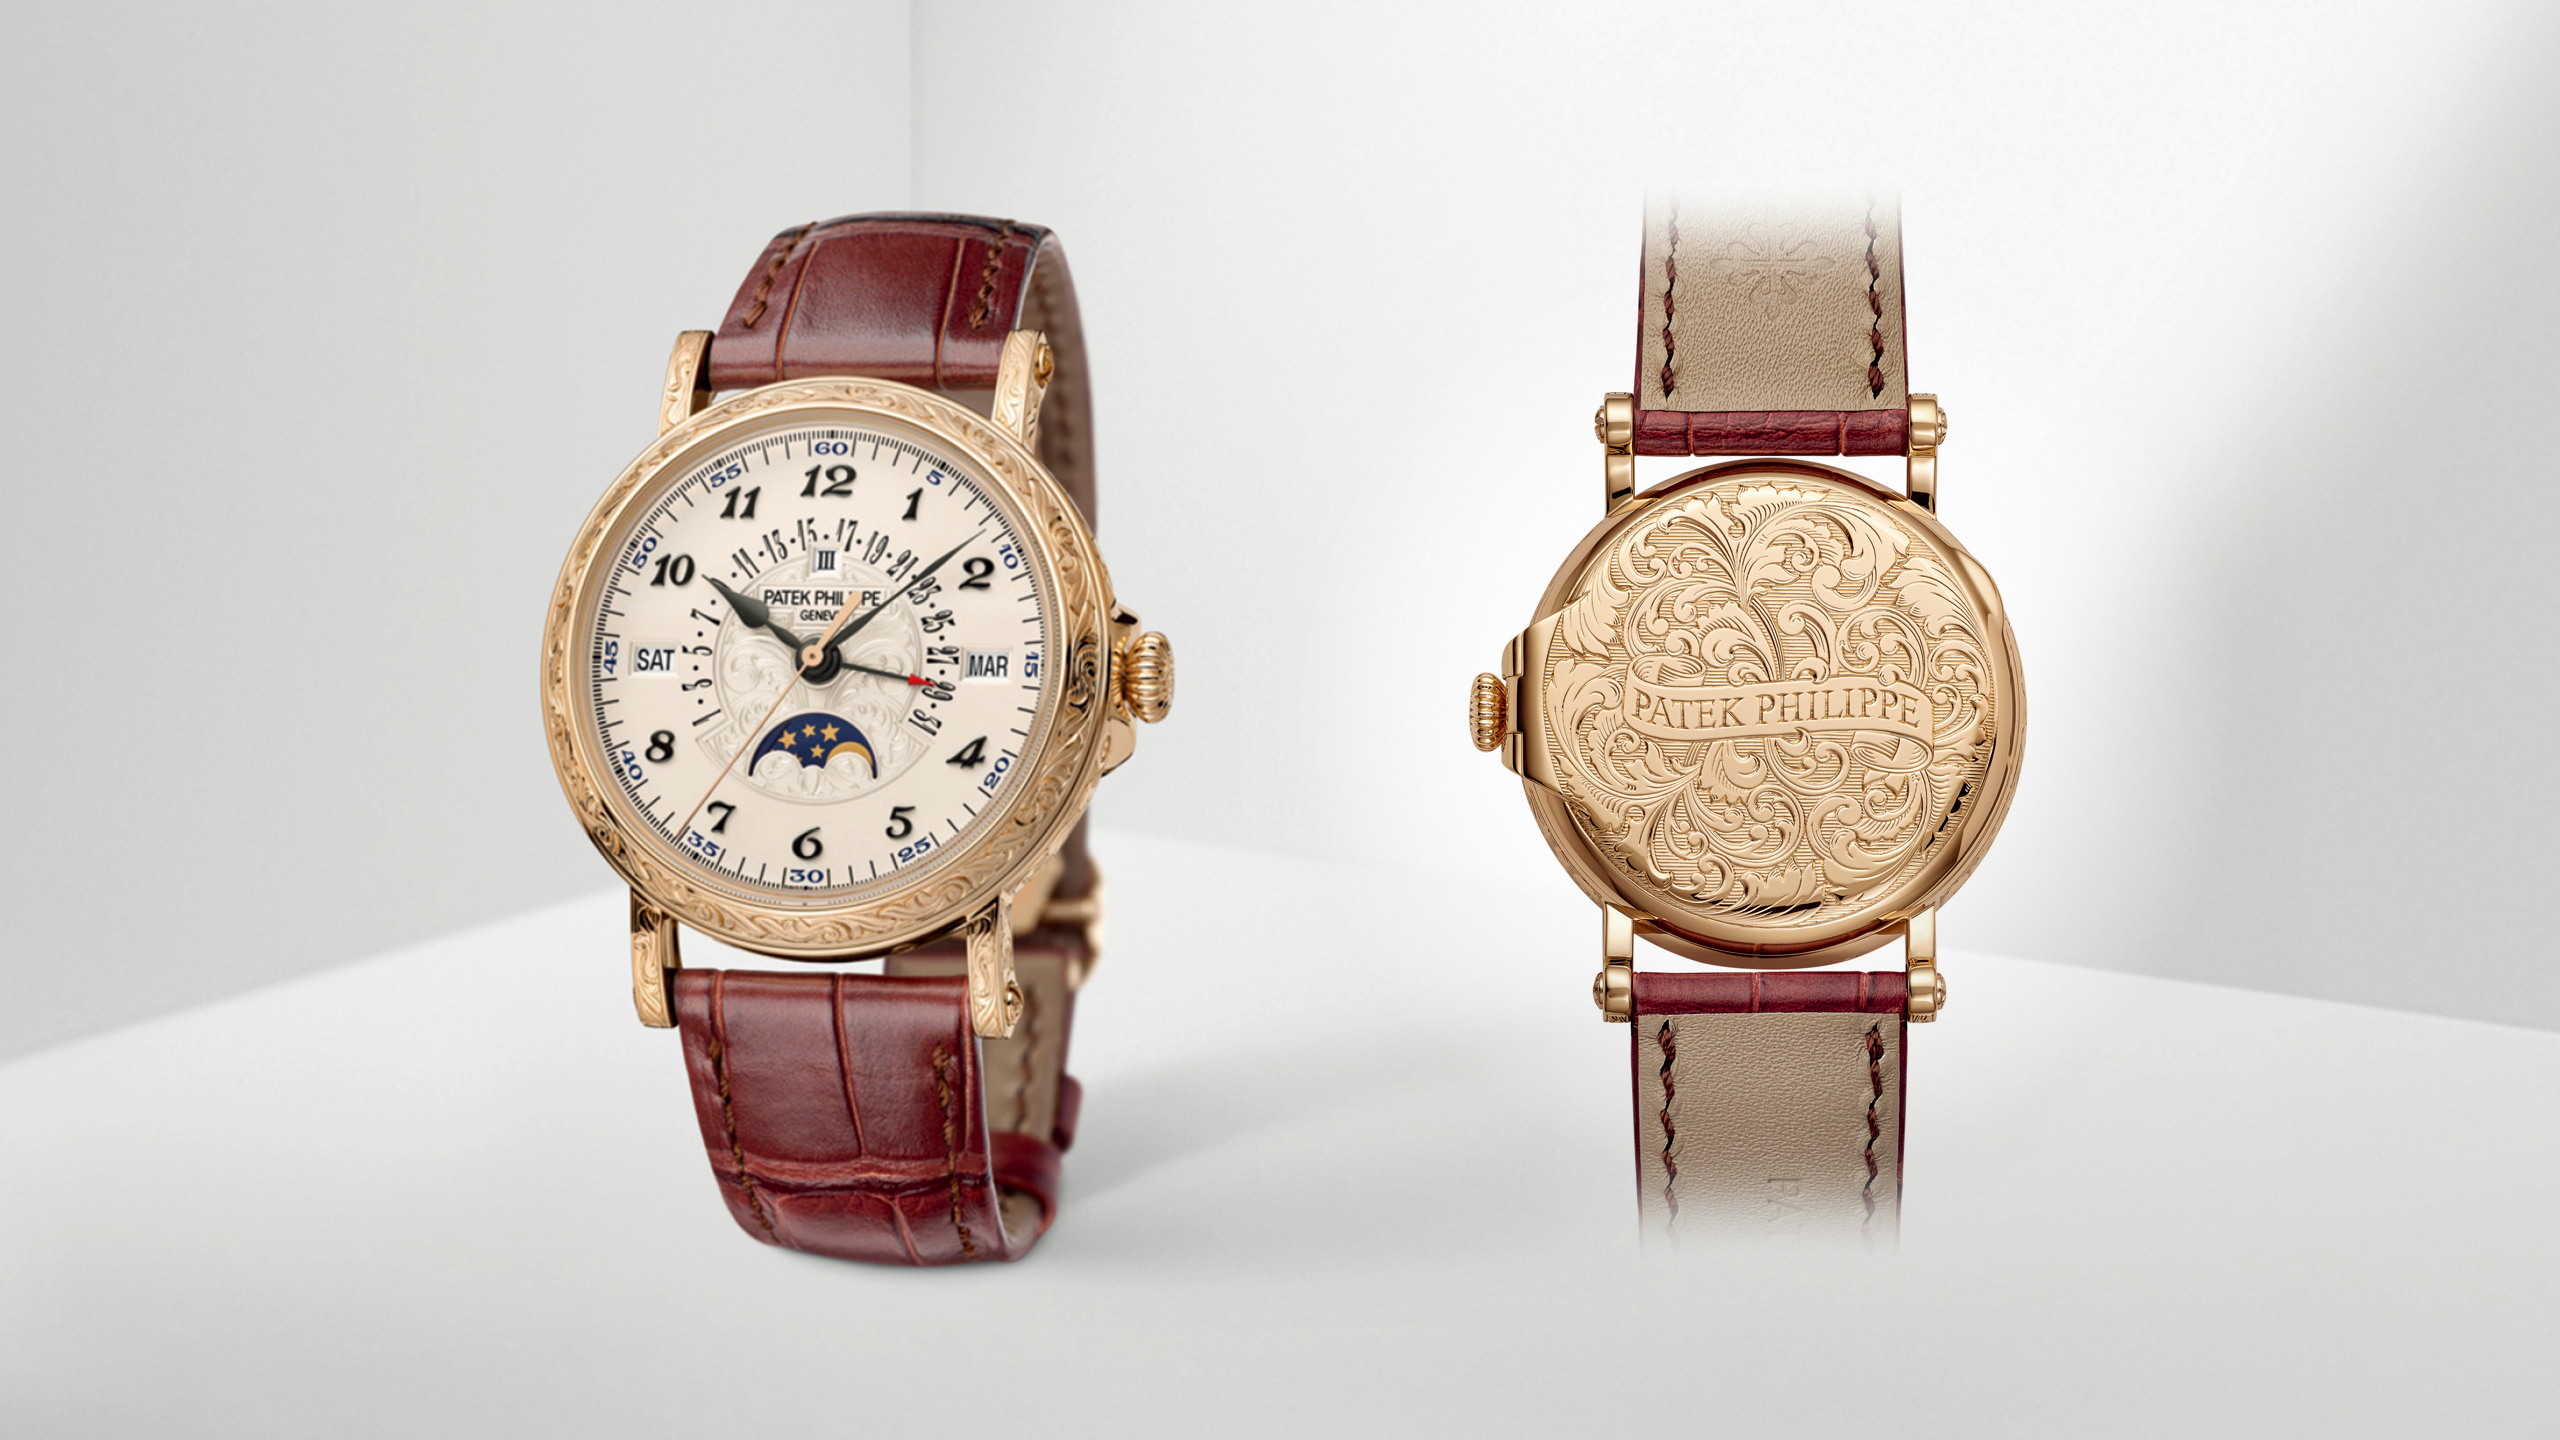 （左）5160/500R-001 自動回位萬年曆腕錶，搭載 26-330 S QR 自動上鍊機芯，18K 玫瑰金錶殼，錶徑 38mm，防水 30 米，NT$6,544,000 元。（右）軍官式設計後底蓋，讓腕錶擁有更多貴金屬面積能透過手工精雕呈現細緻紋理，猶如佩戴於腕間的藝術品。